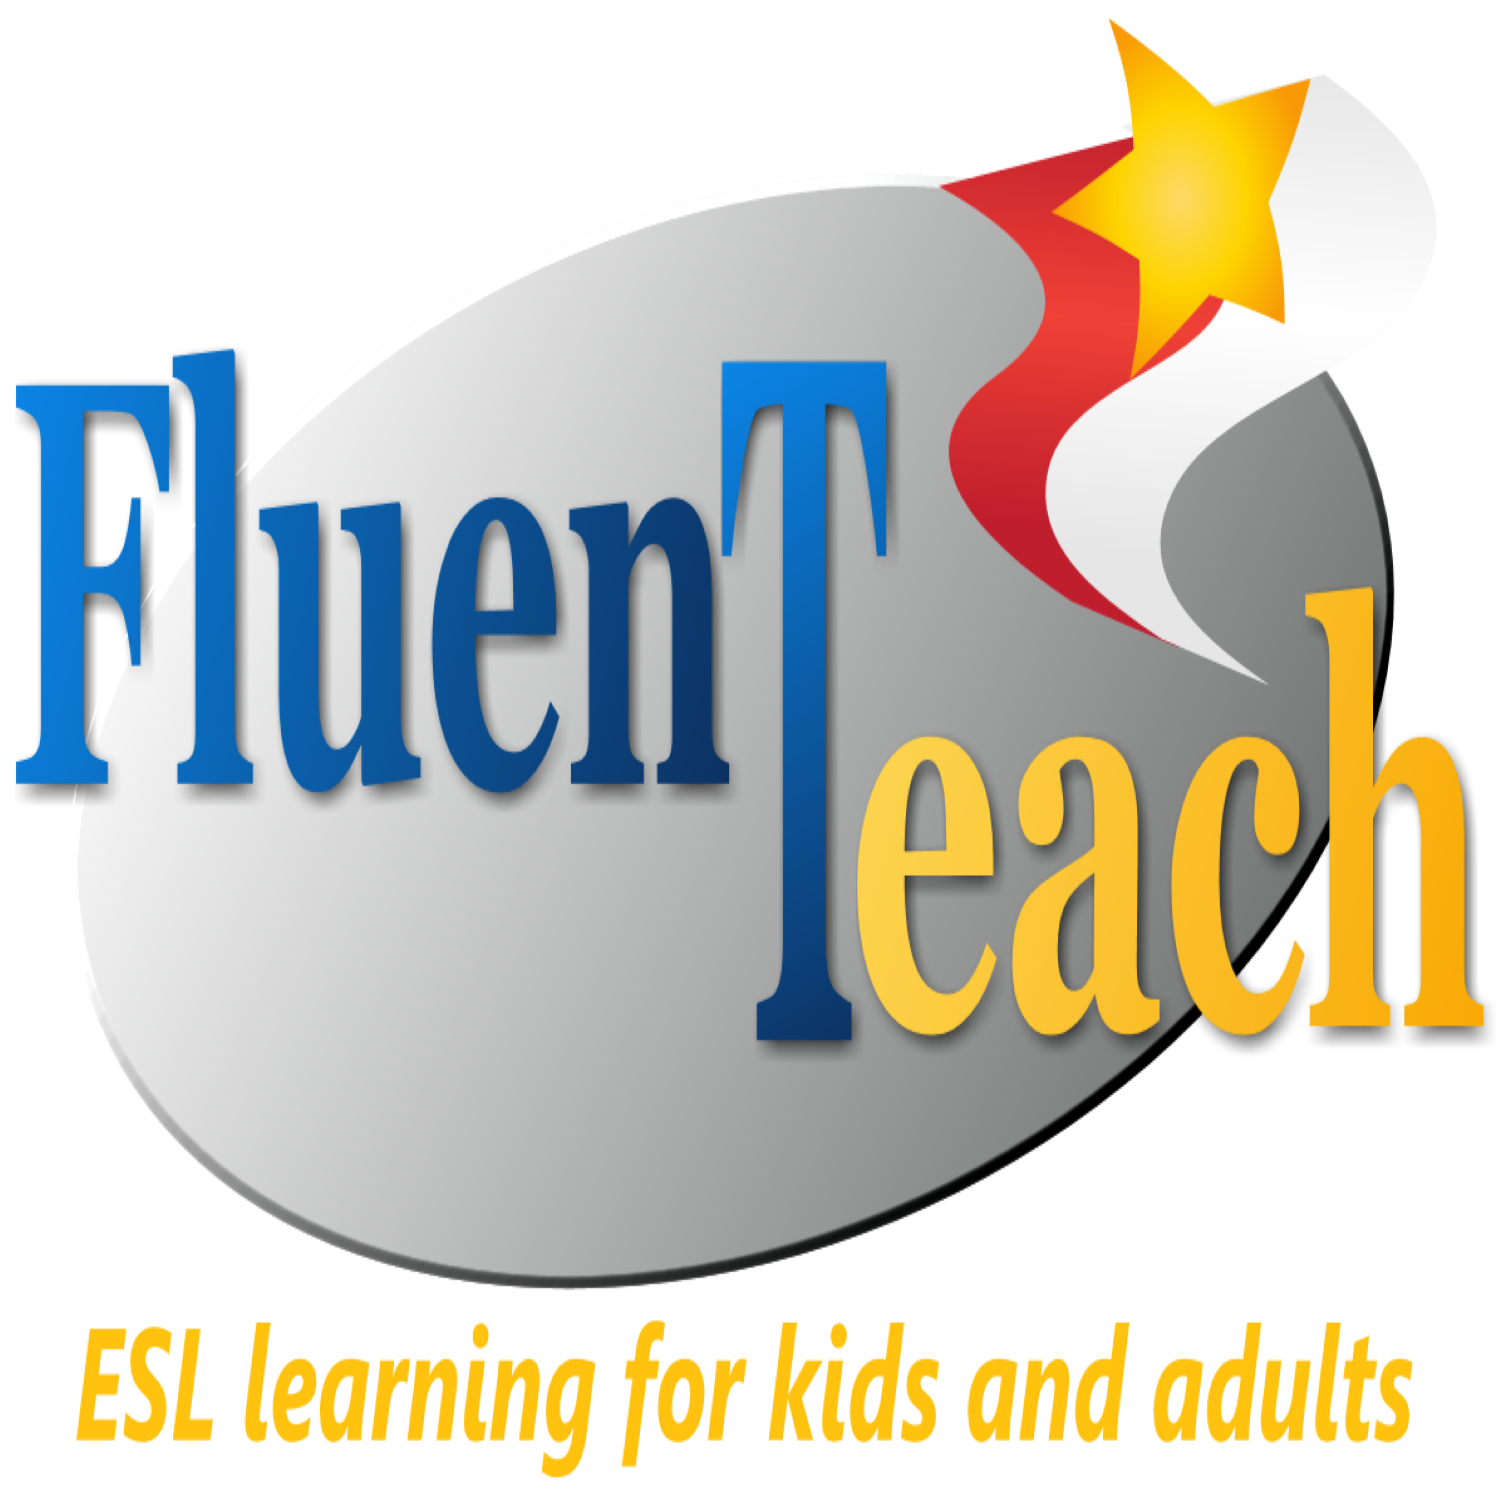 FluenTeach Logo